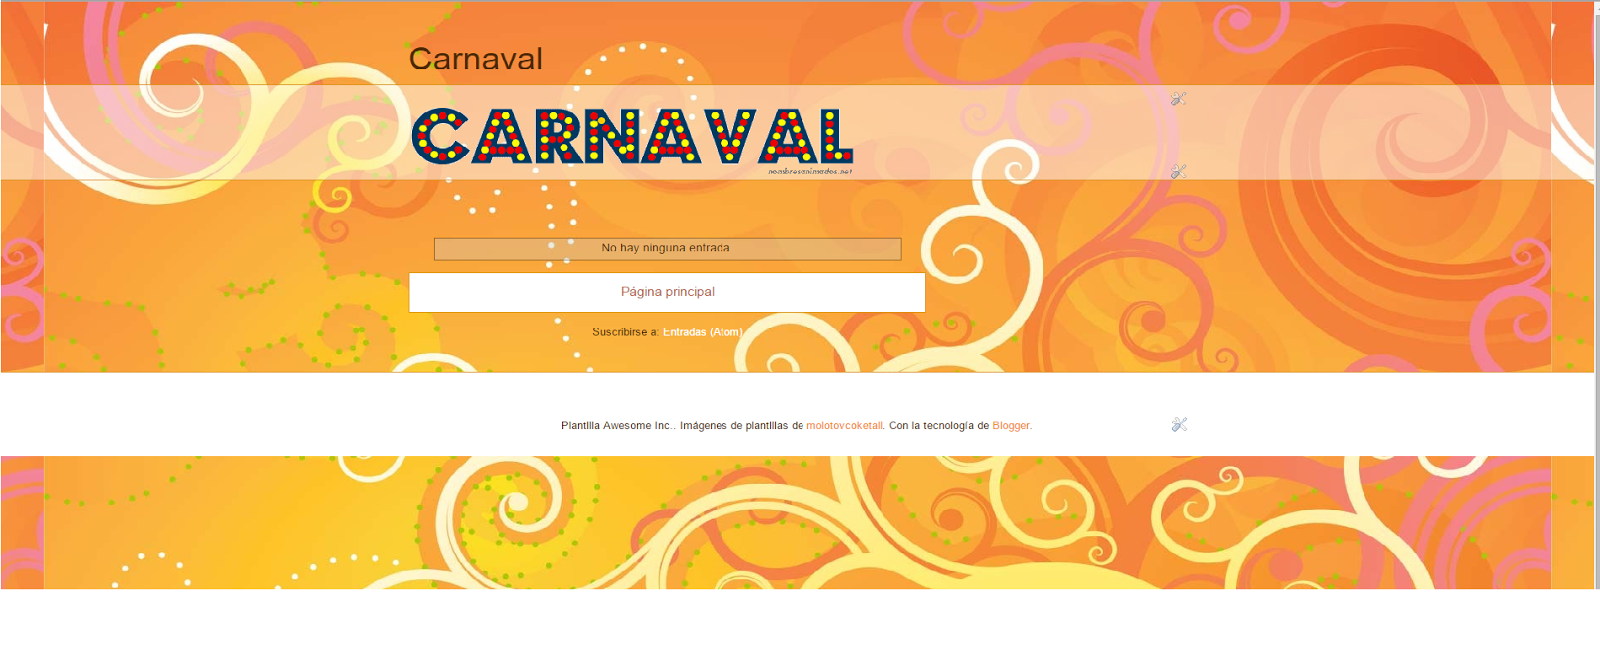 Enlace blog carnaval